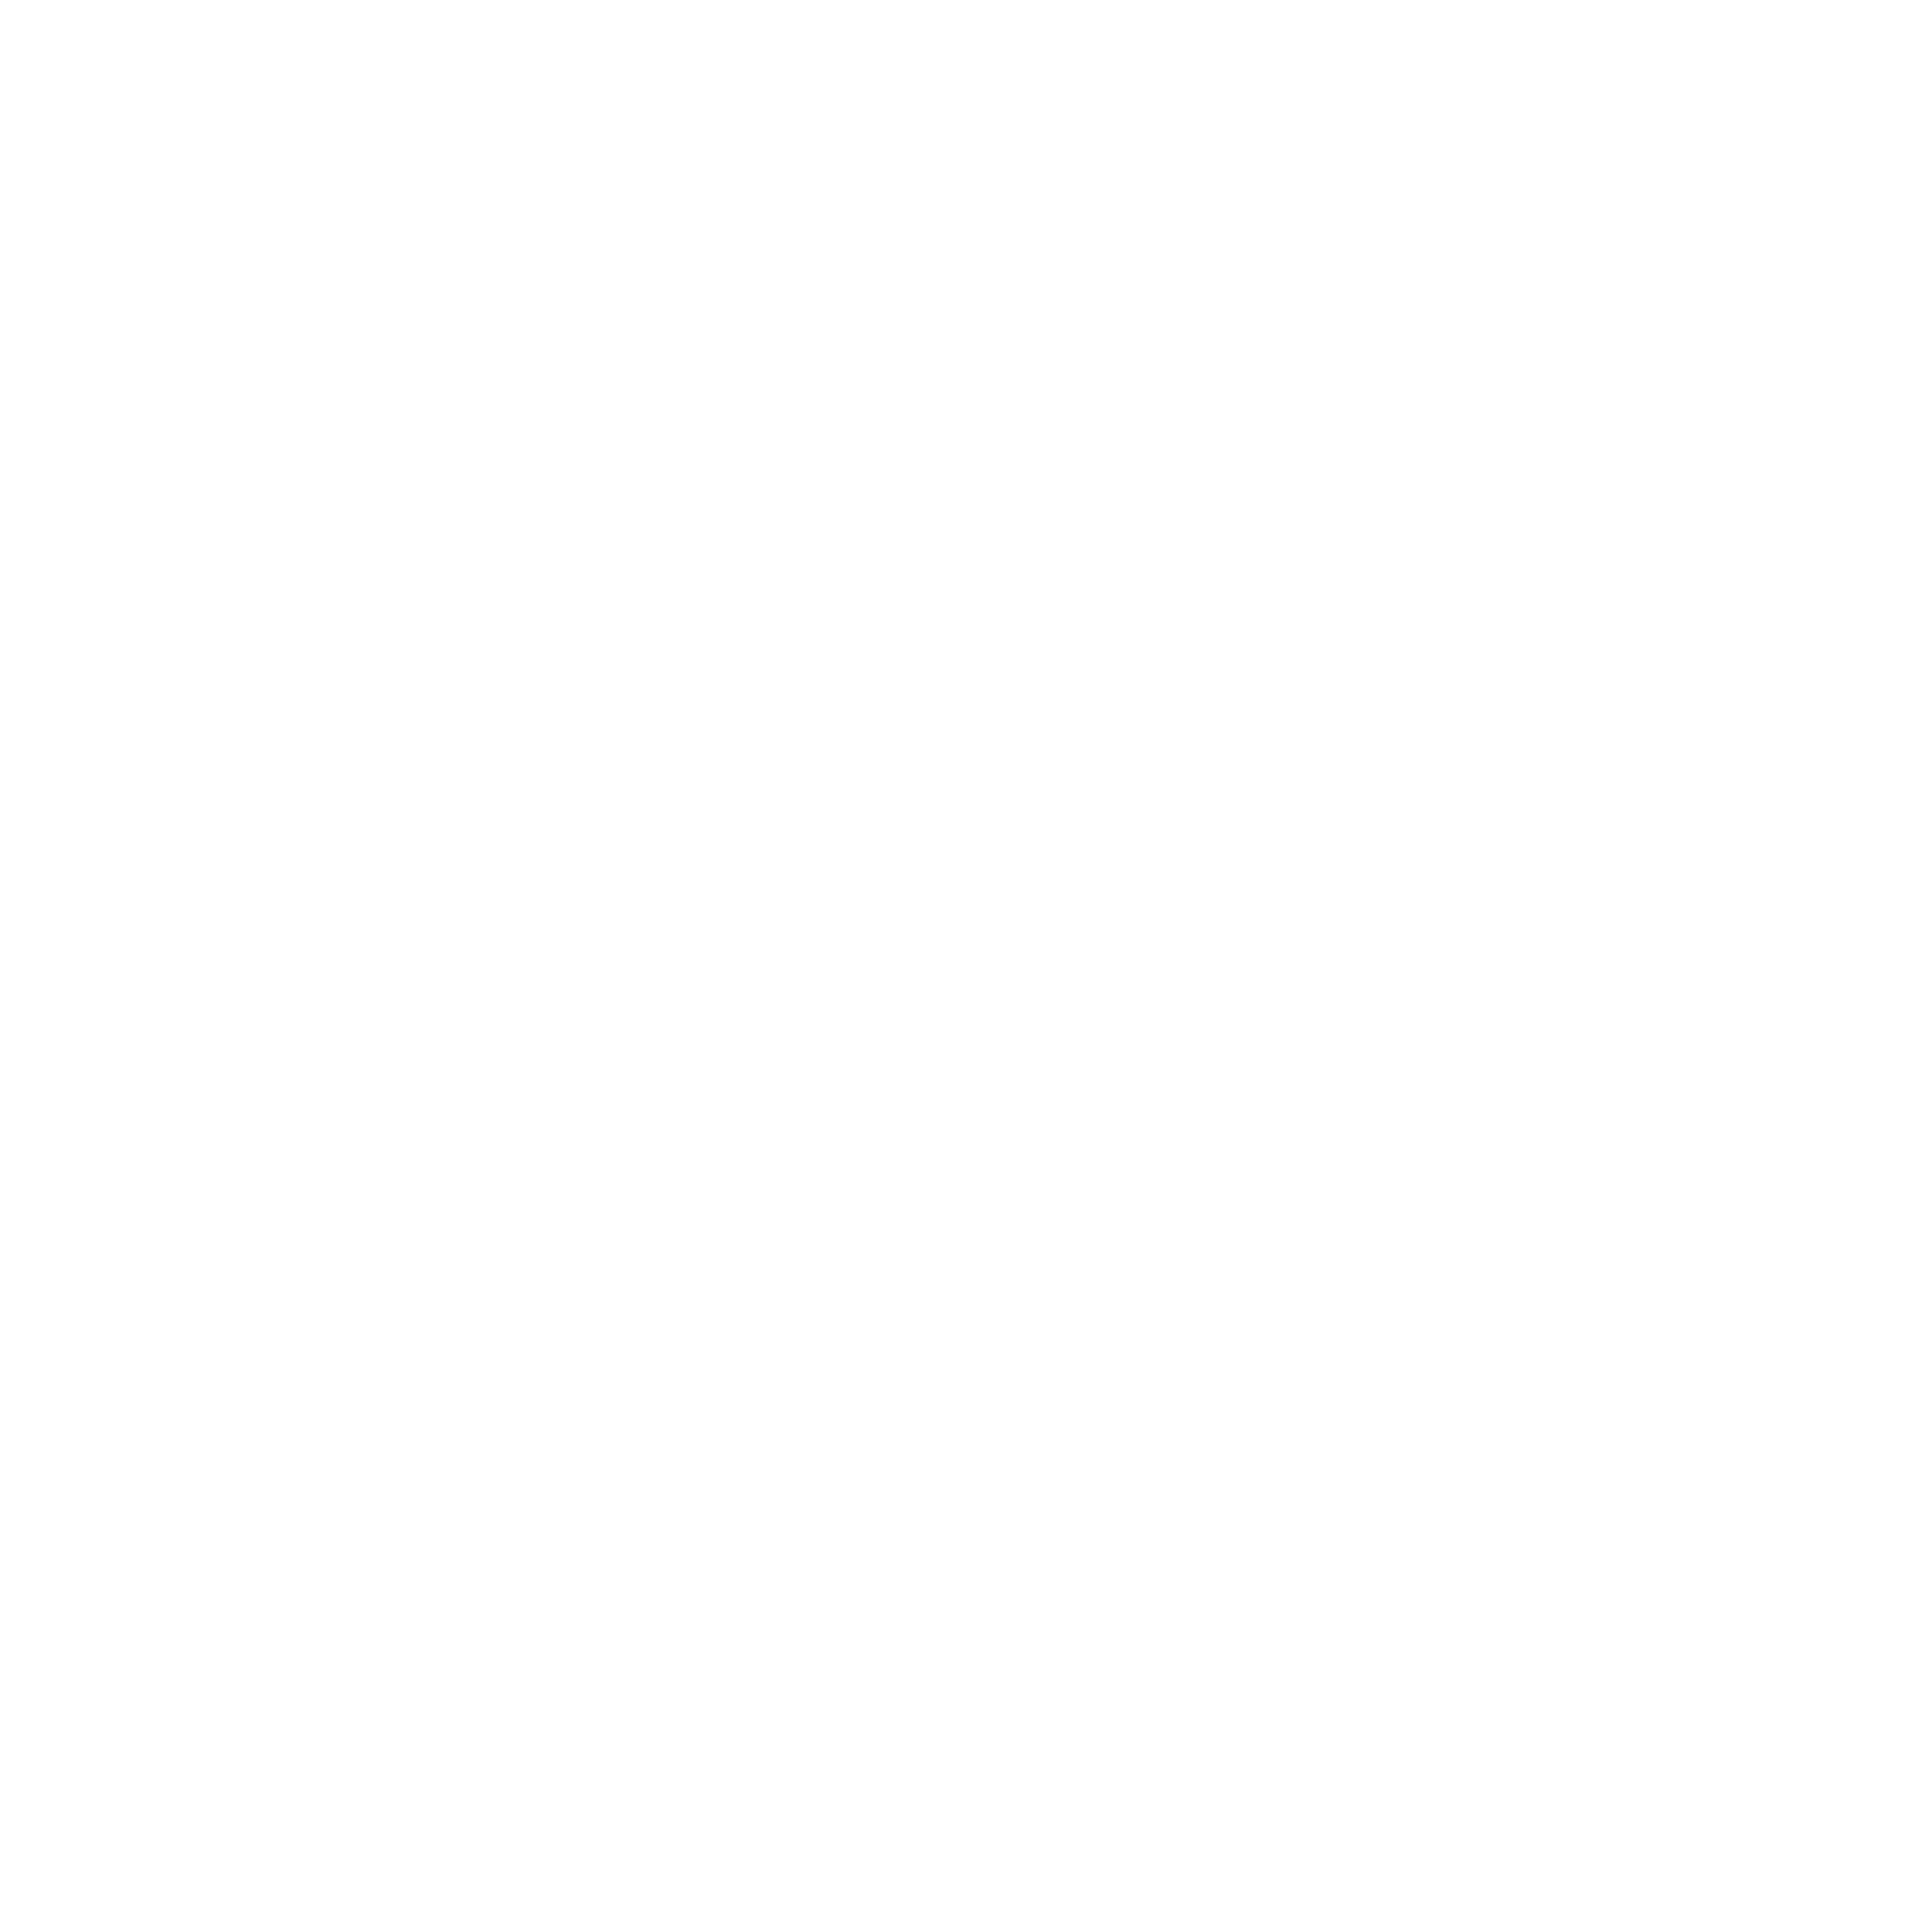 The White Storey